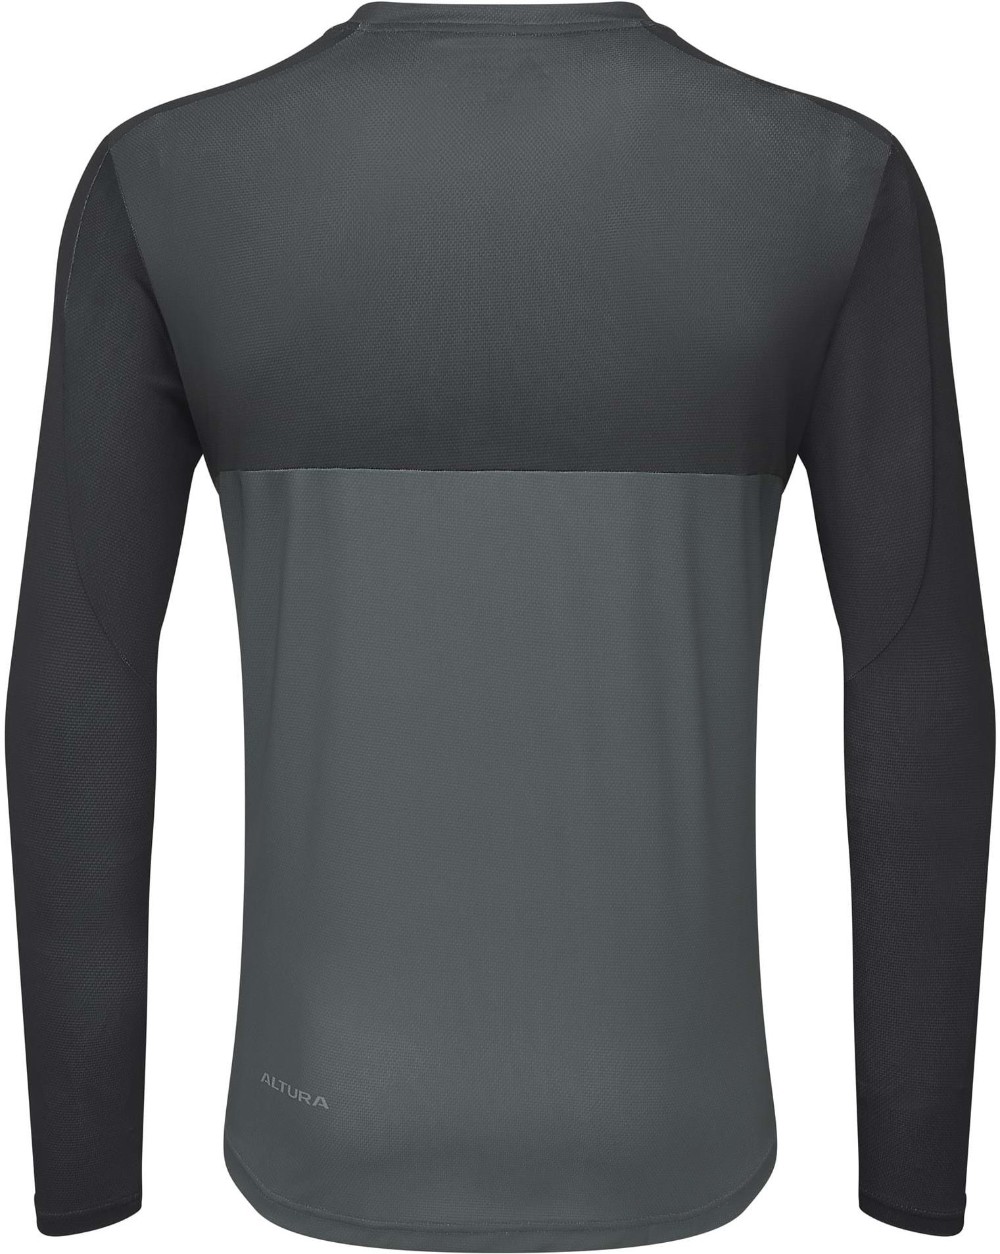 Kielder Lightweight Long Sleeve Jersey image 1